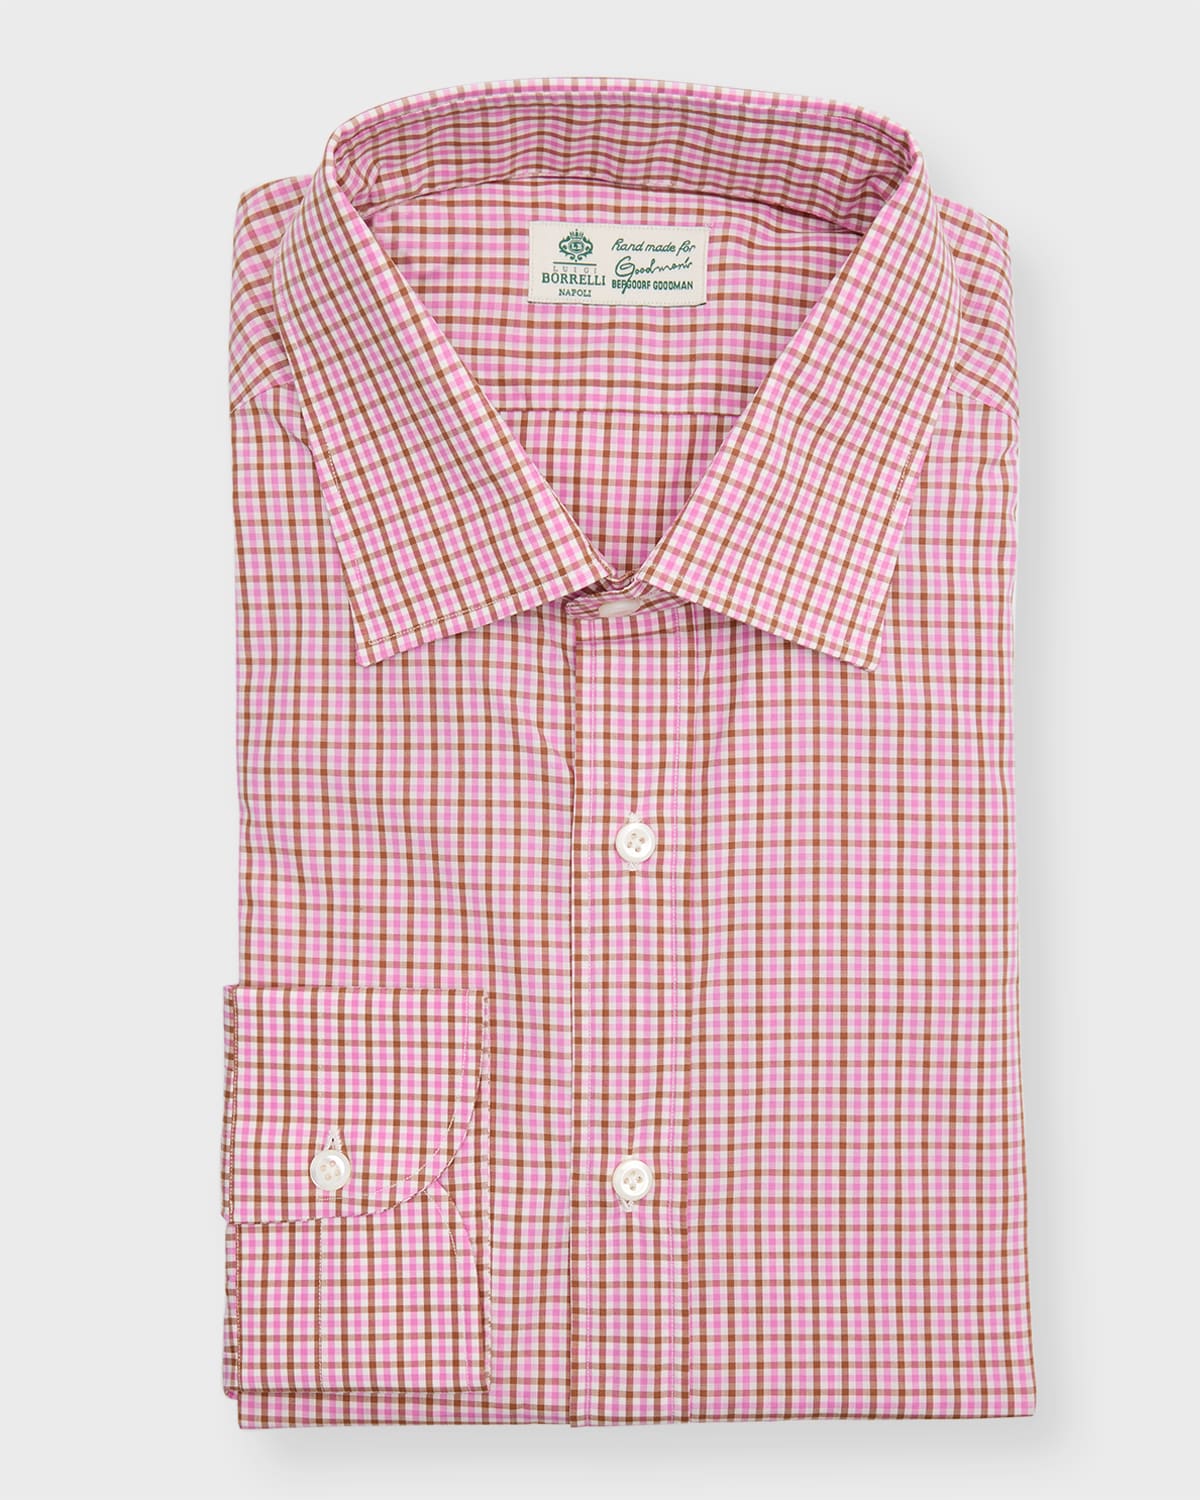 Men's Cotton Micro-Check Casual Button-Down Shirt